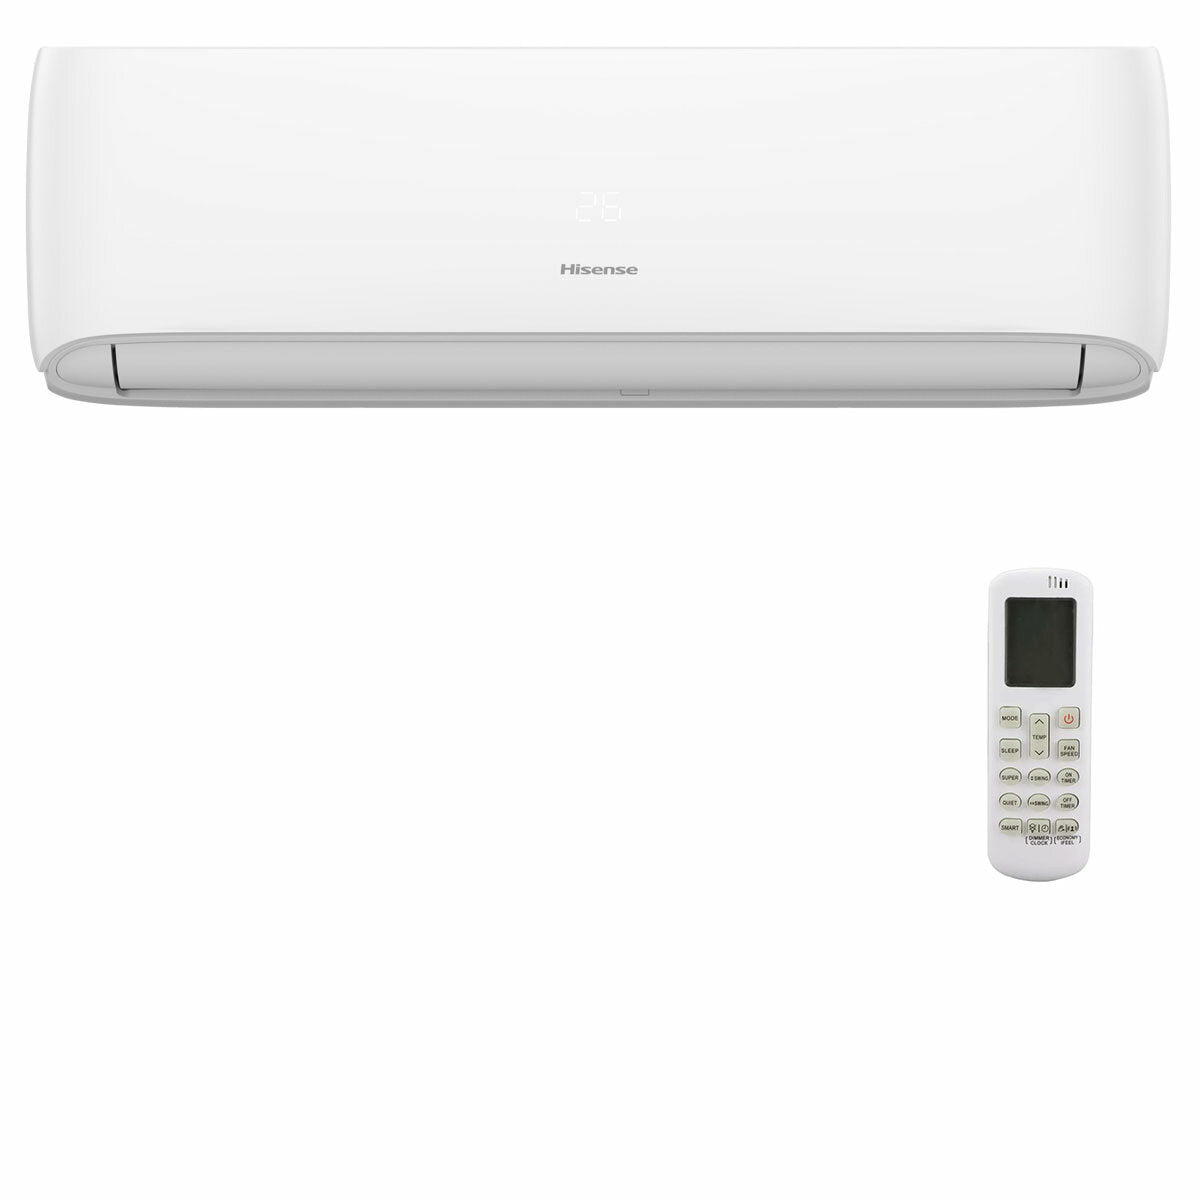 Hisense Hi-Comfort penta split air conditioner 9000+9000+9000+9000+18000 BTU wifi inverter outdoor unit 12.5 kW